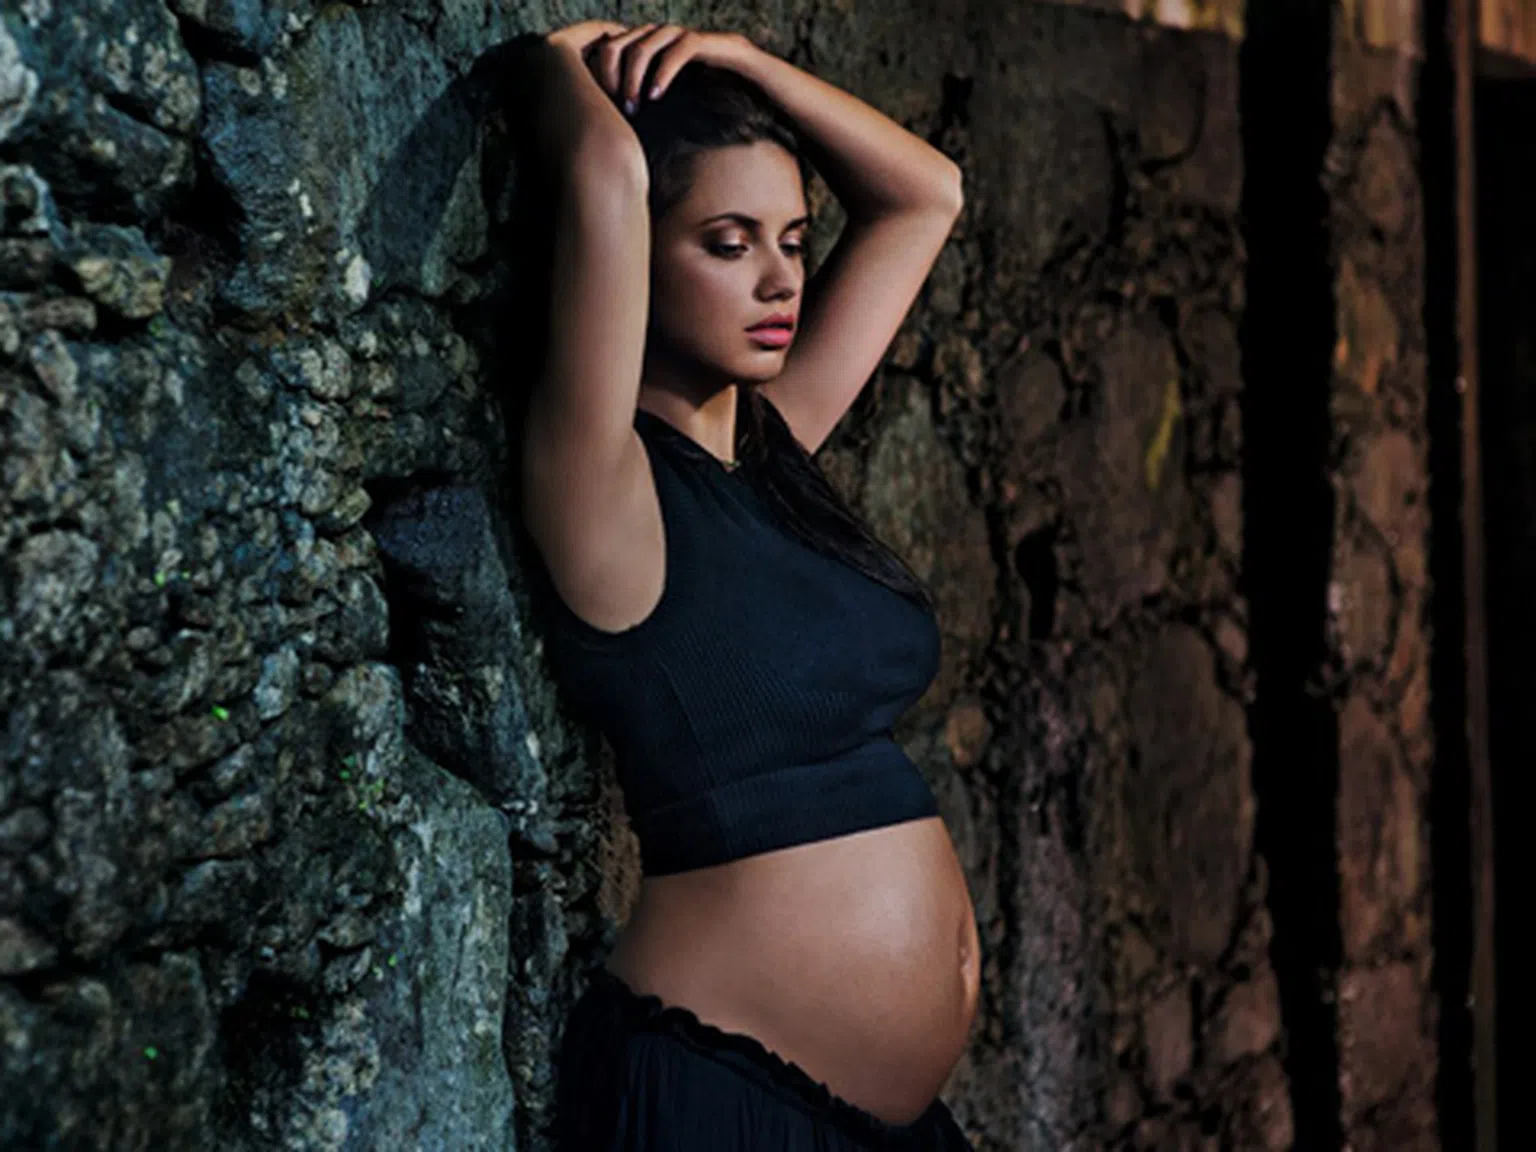 Съвети за бързо отслабване след бременност от Адриана Лима